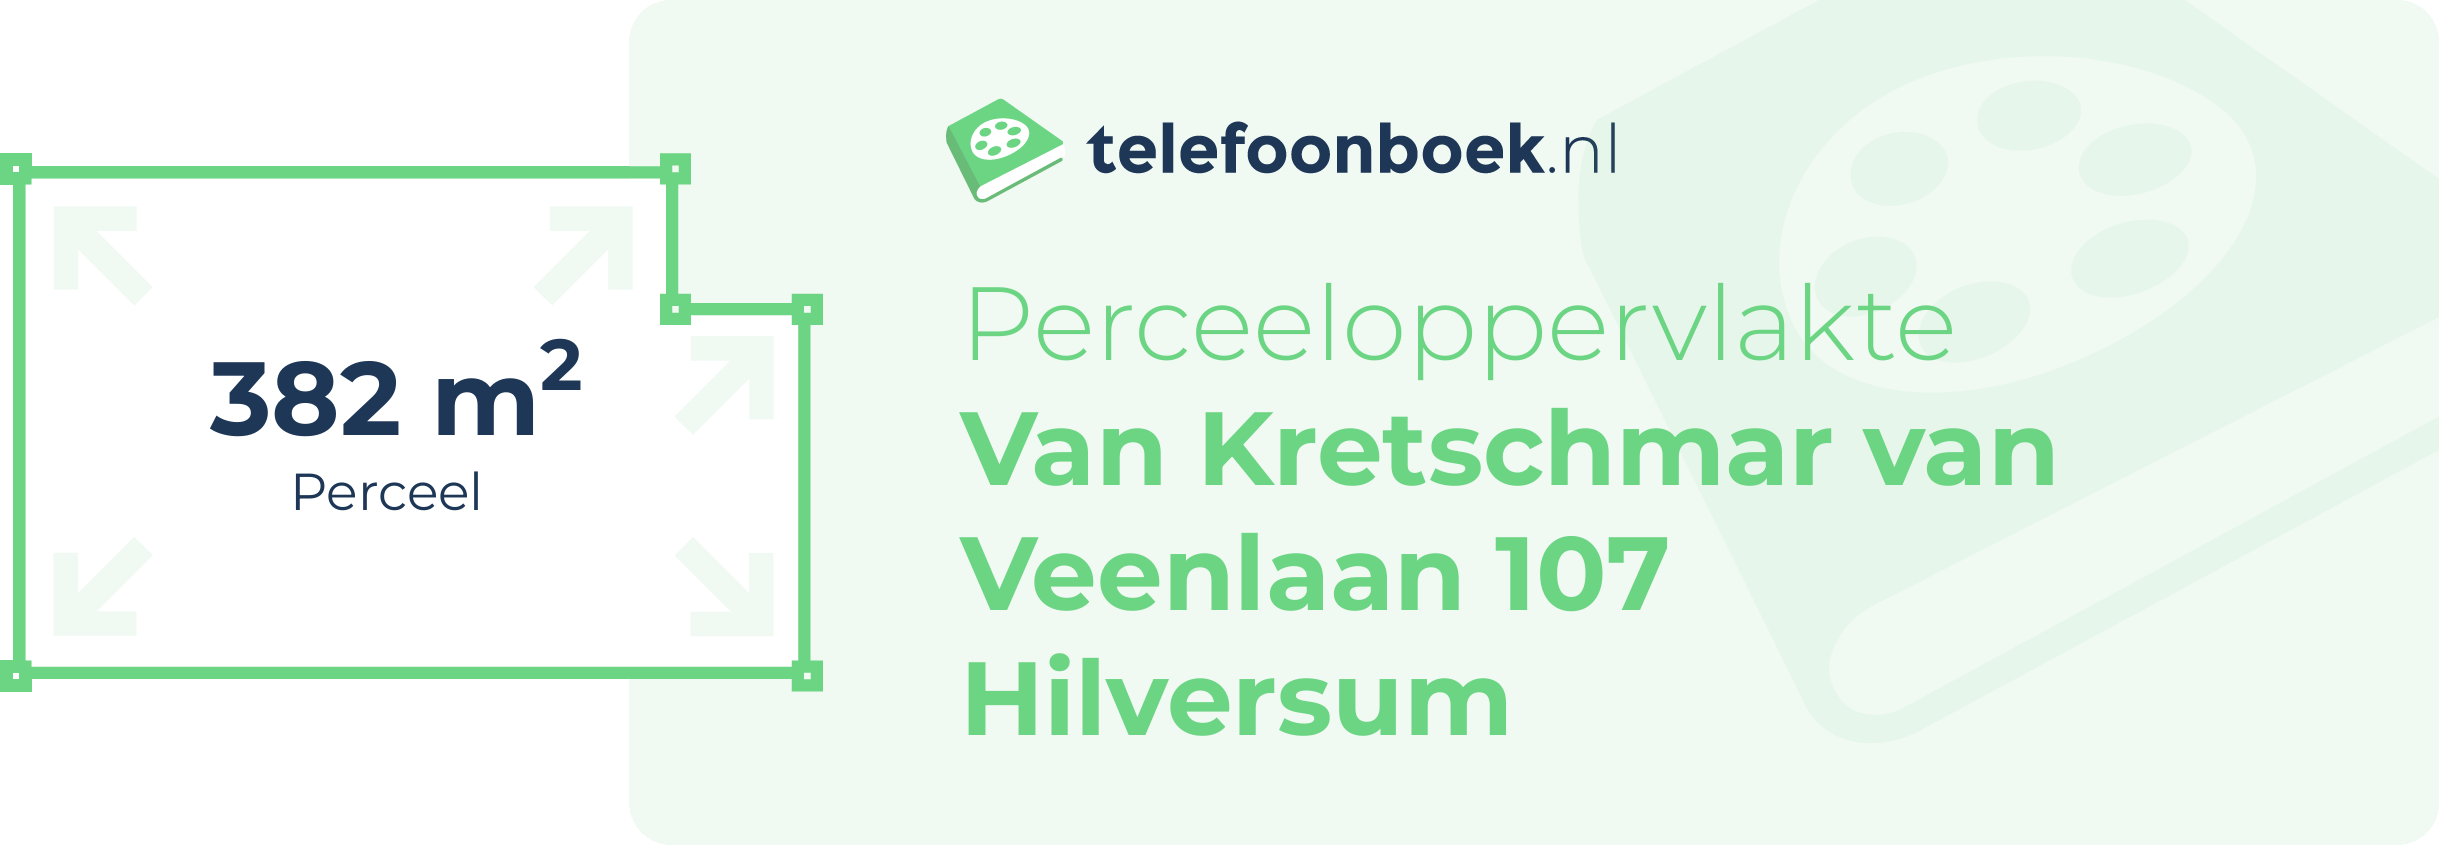 Perceeloppervlakte Van Kretschmar Van Veenlaan 107 Hilversum